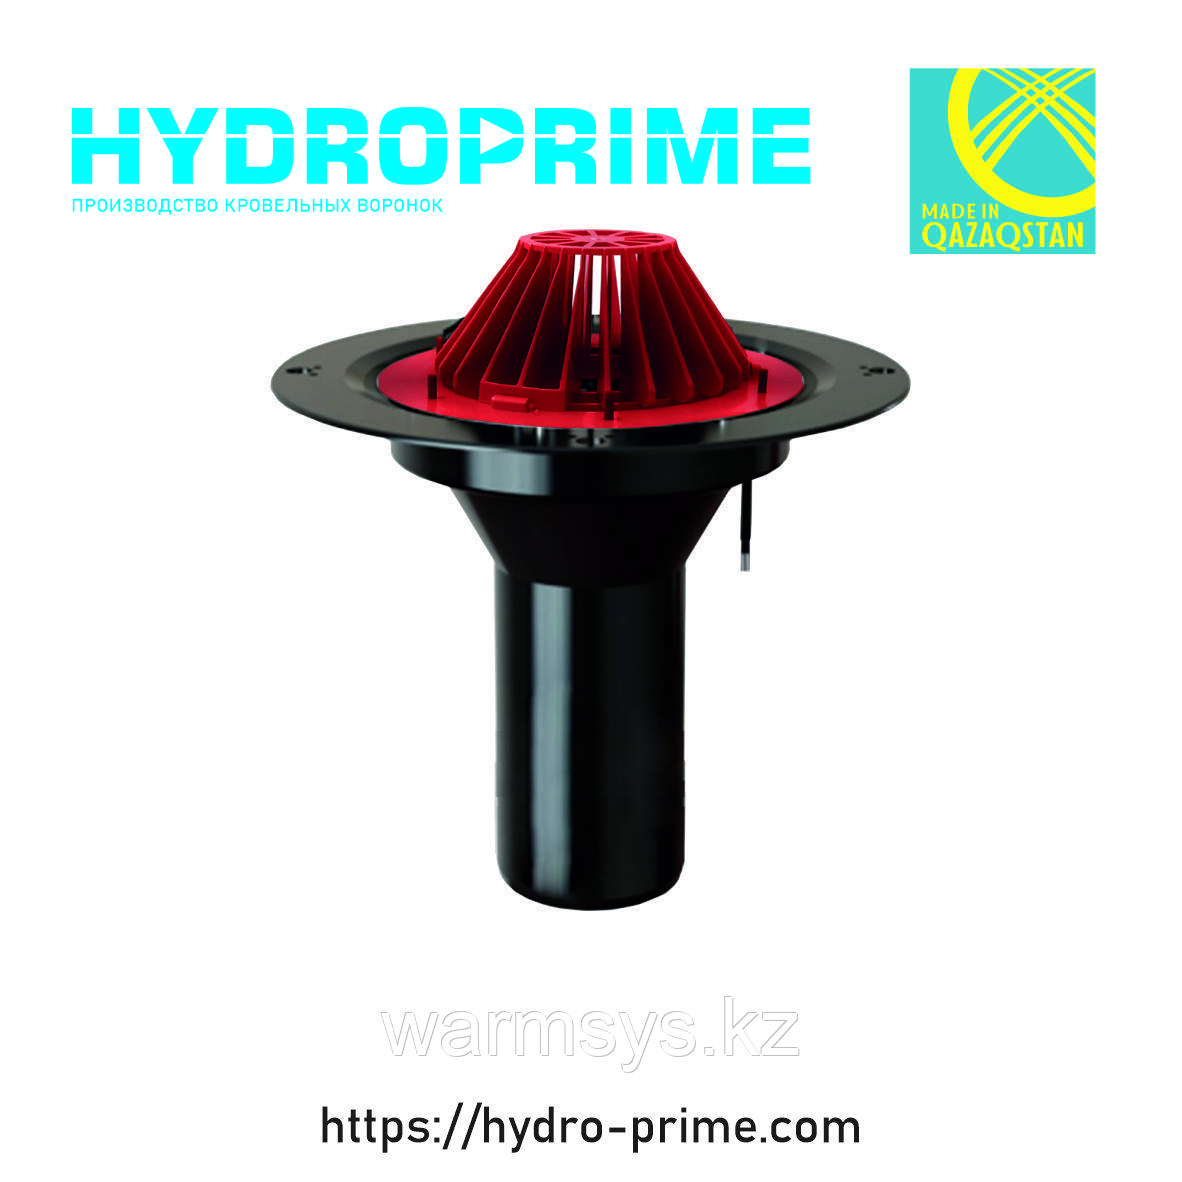 Кровельная воронка HydroPrime HPH 110x450 с электрообогревом